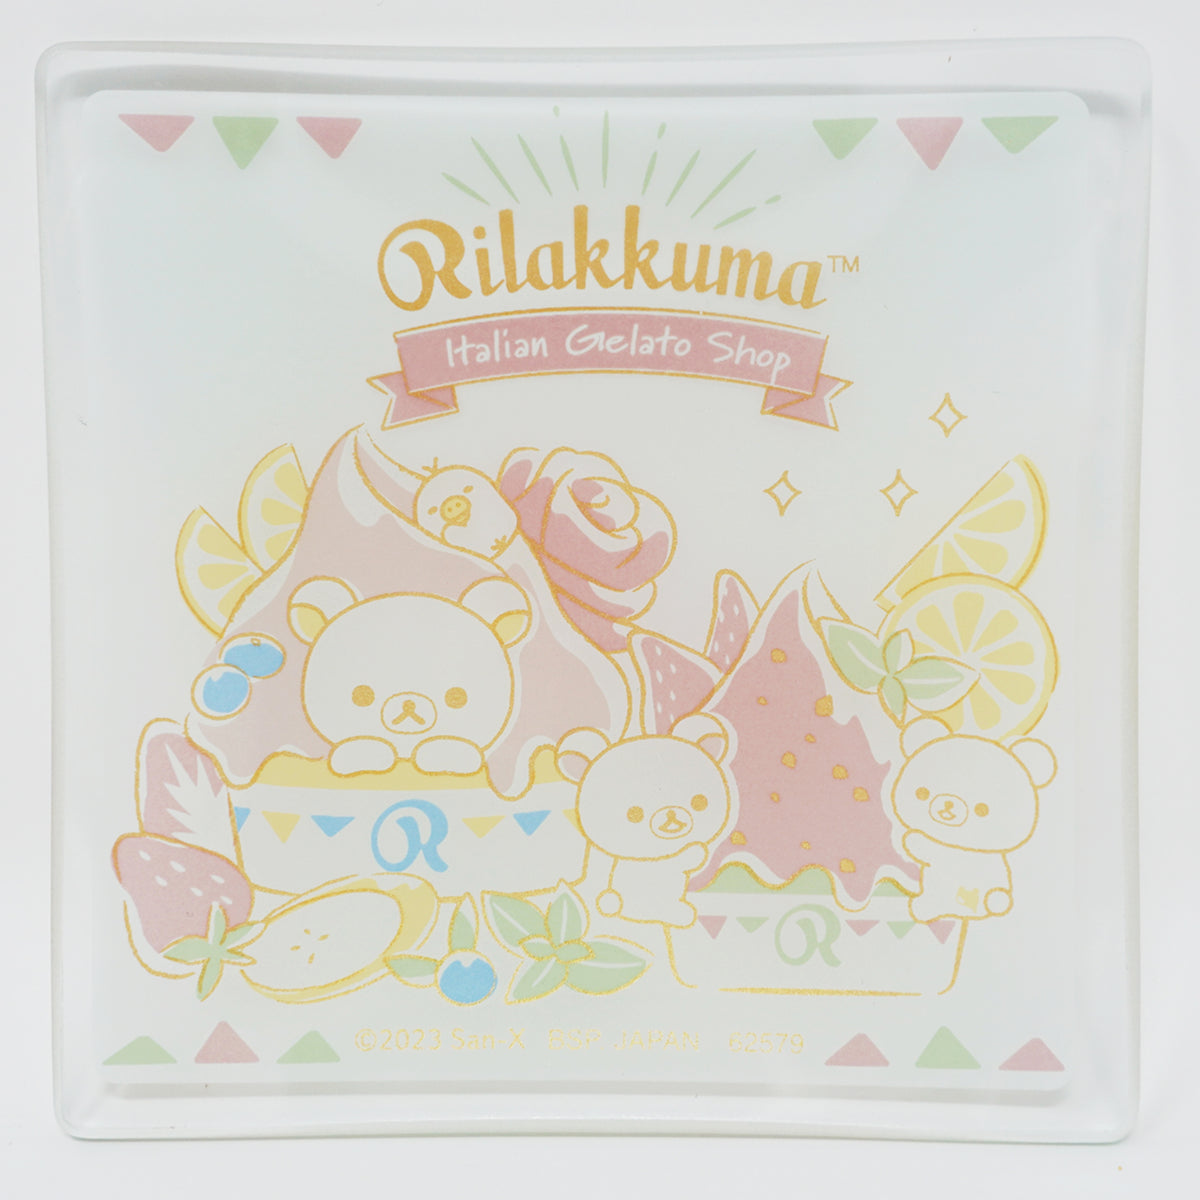 I bought Rilakkuma stickers at Daiso : r/rilakkuma